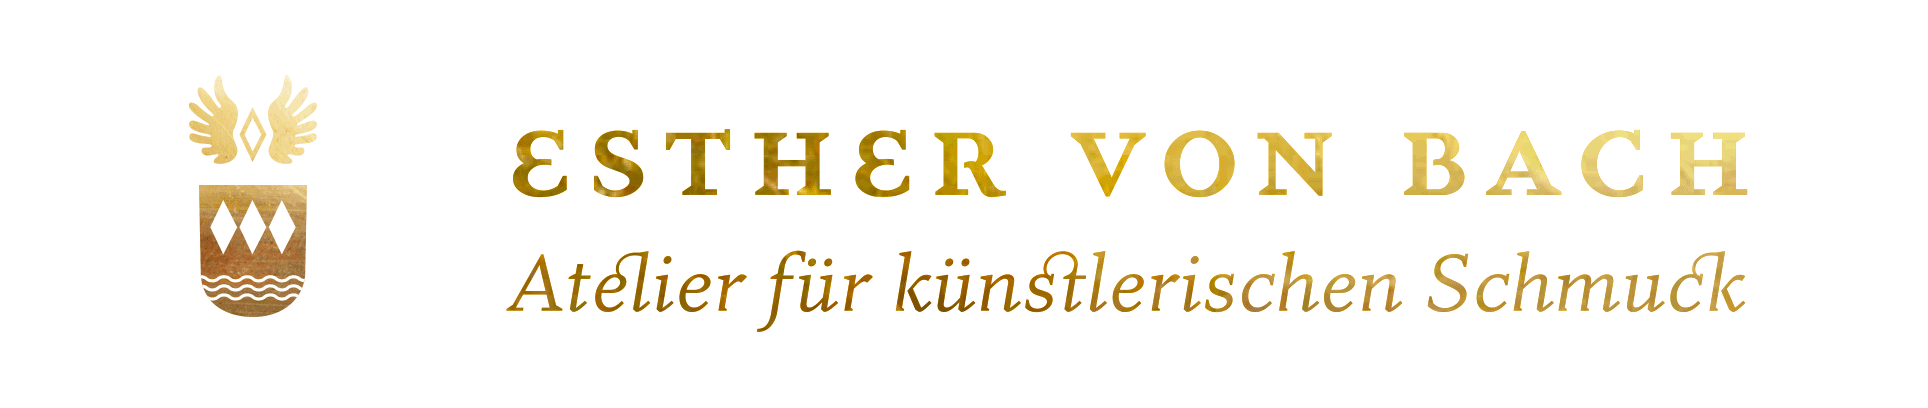 Esther von Bach - Atelier für künstlerischen Schmuck